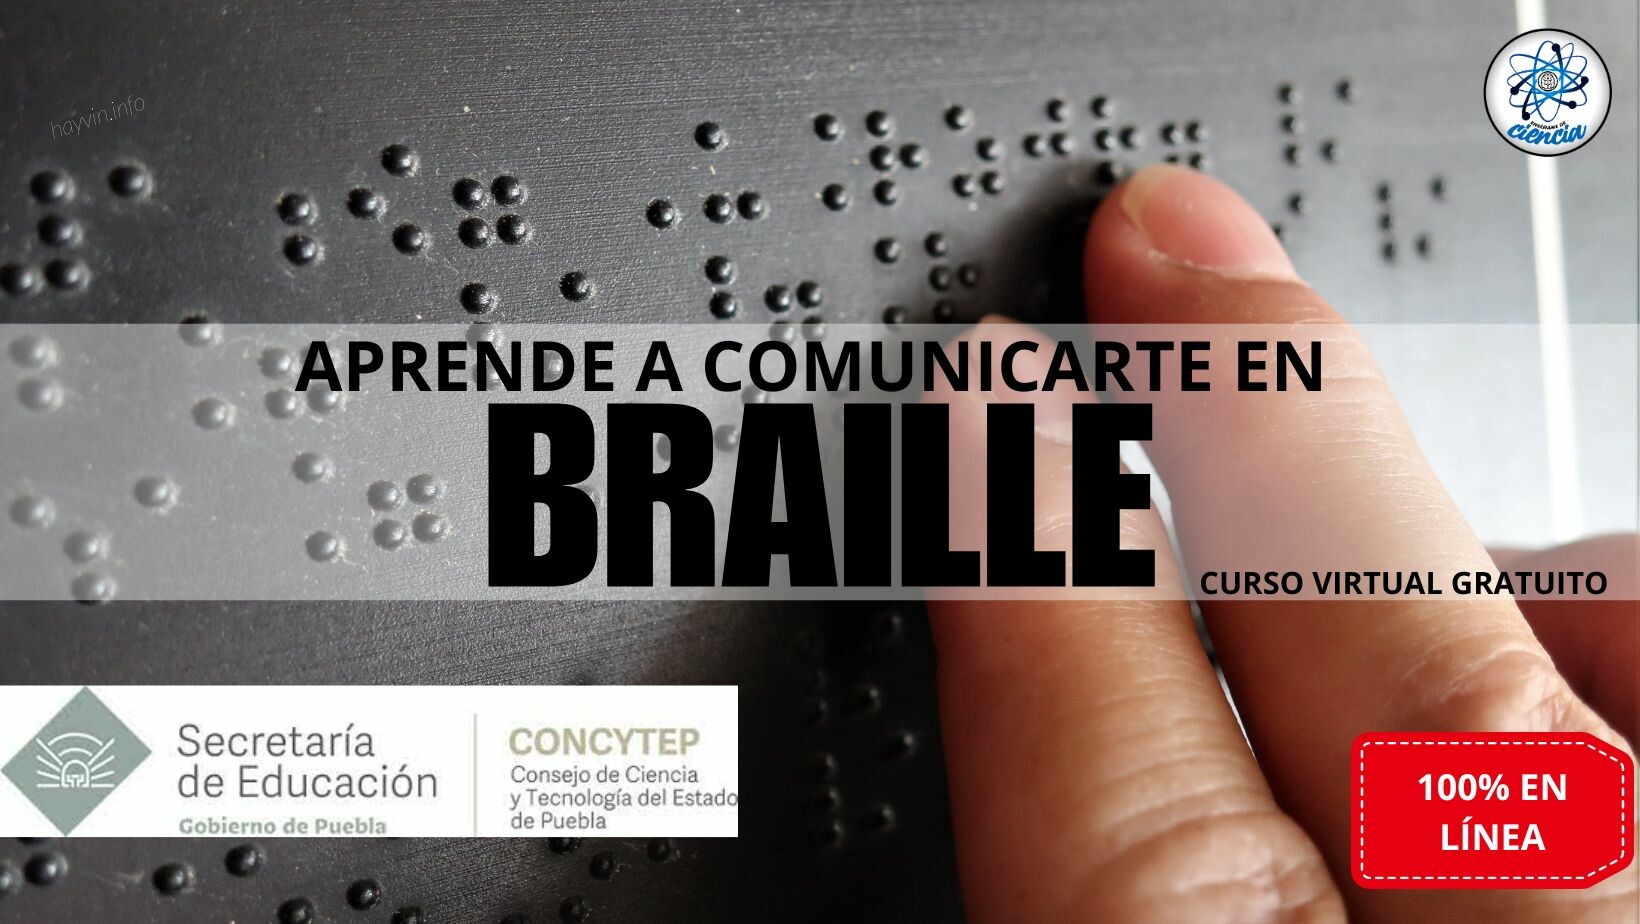 A Puebla kormánya elindított egy INGYENES kurzust, ahol megtanulhatsz Braille-írással írni és olvasni